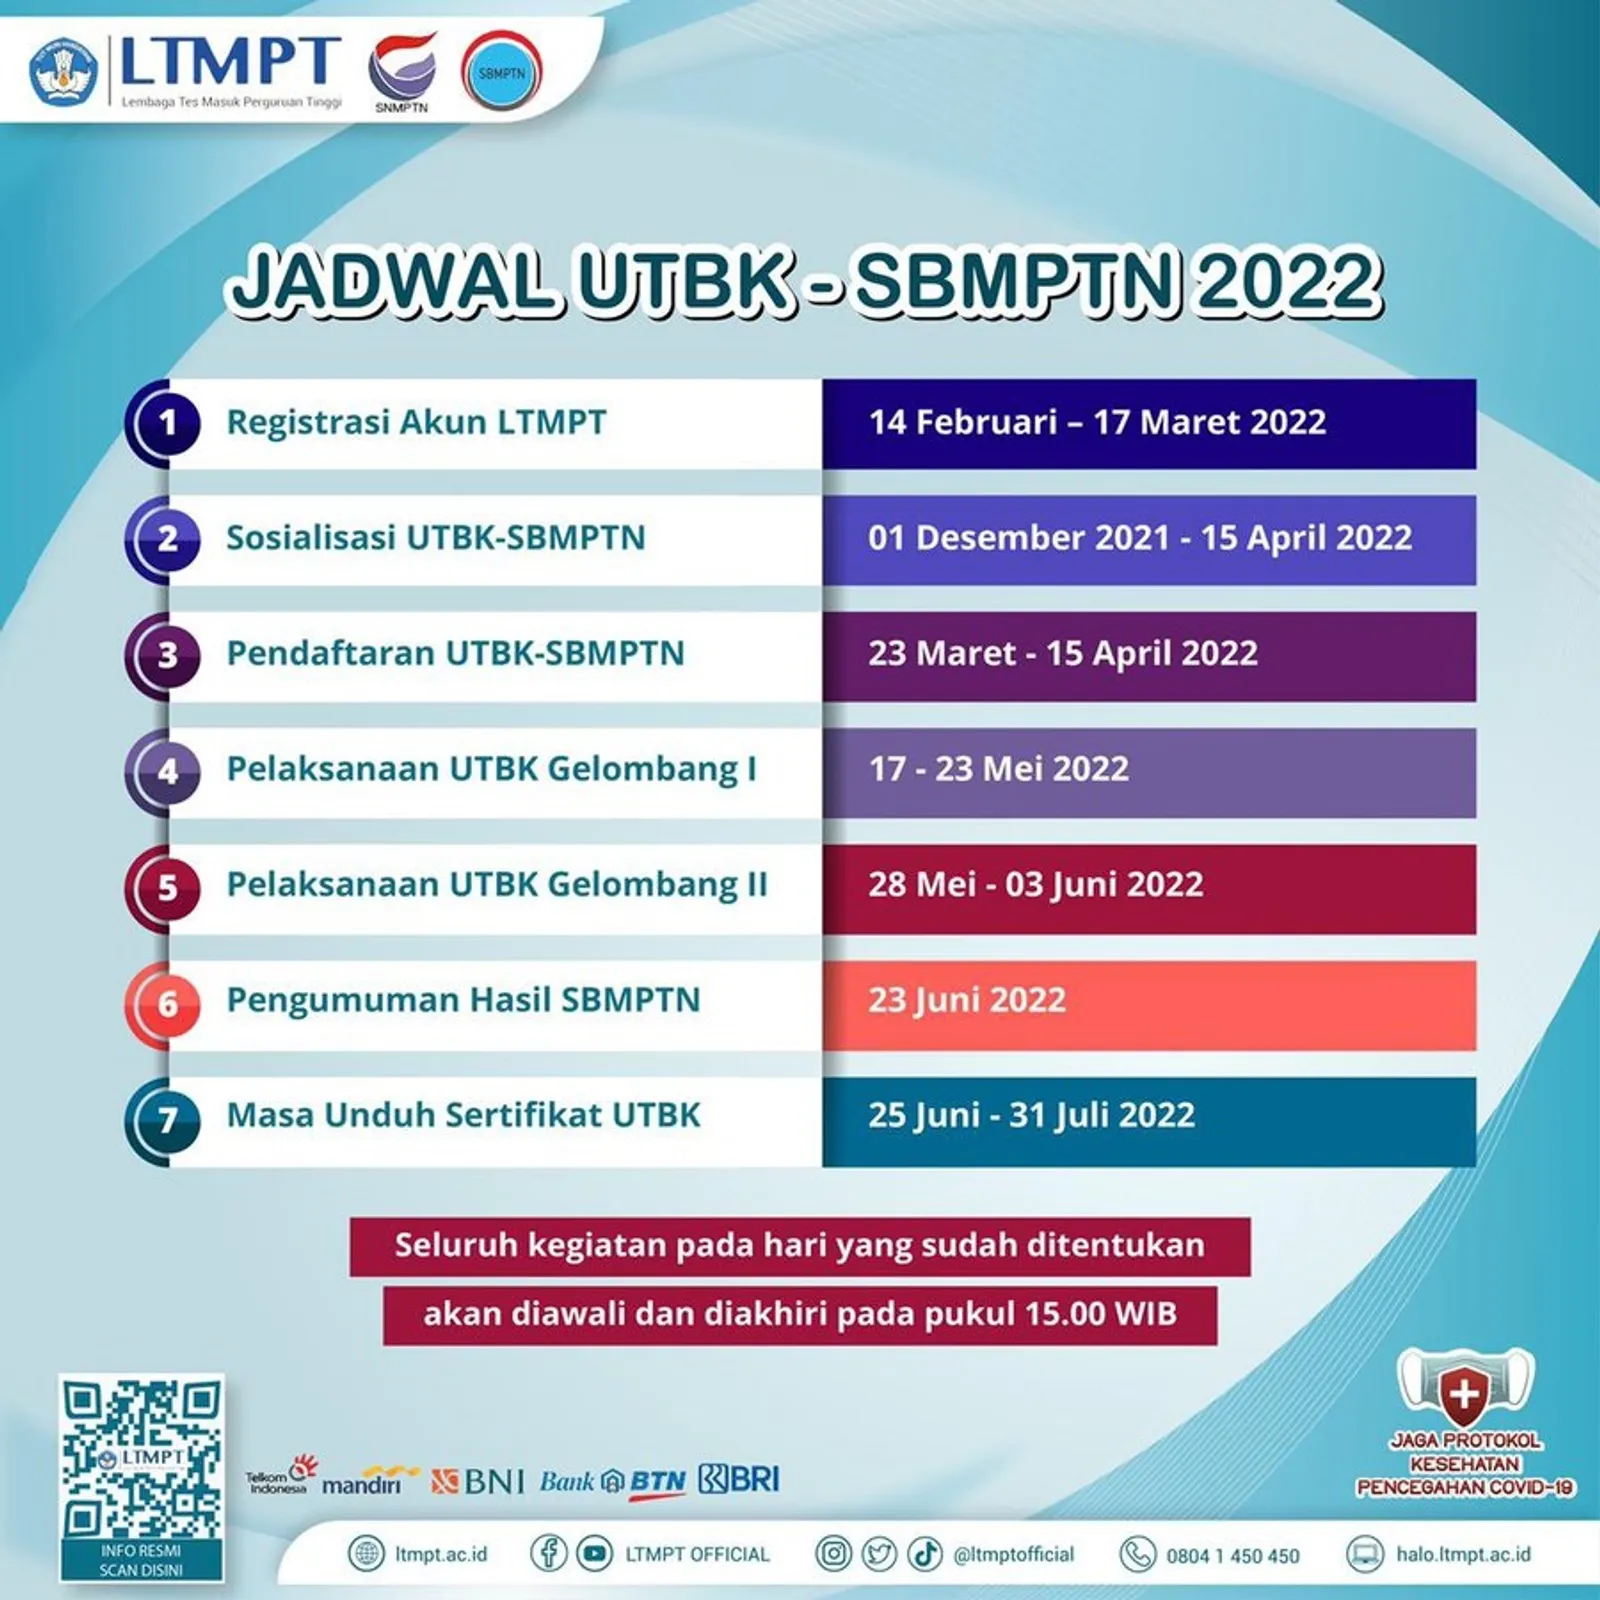 Resmi Dibuka, Ini Cara Daftar UTBK-SBMPTN 2022